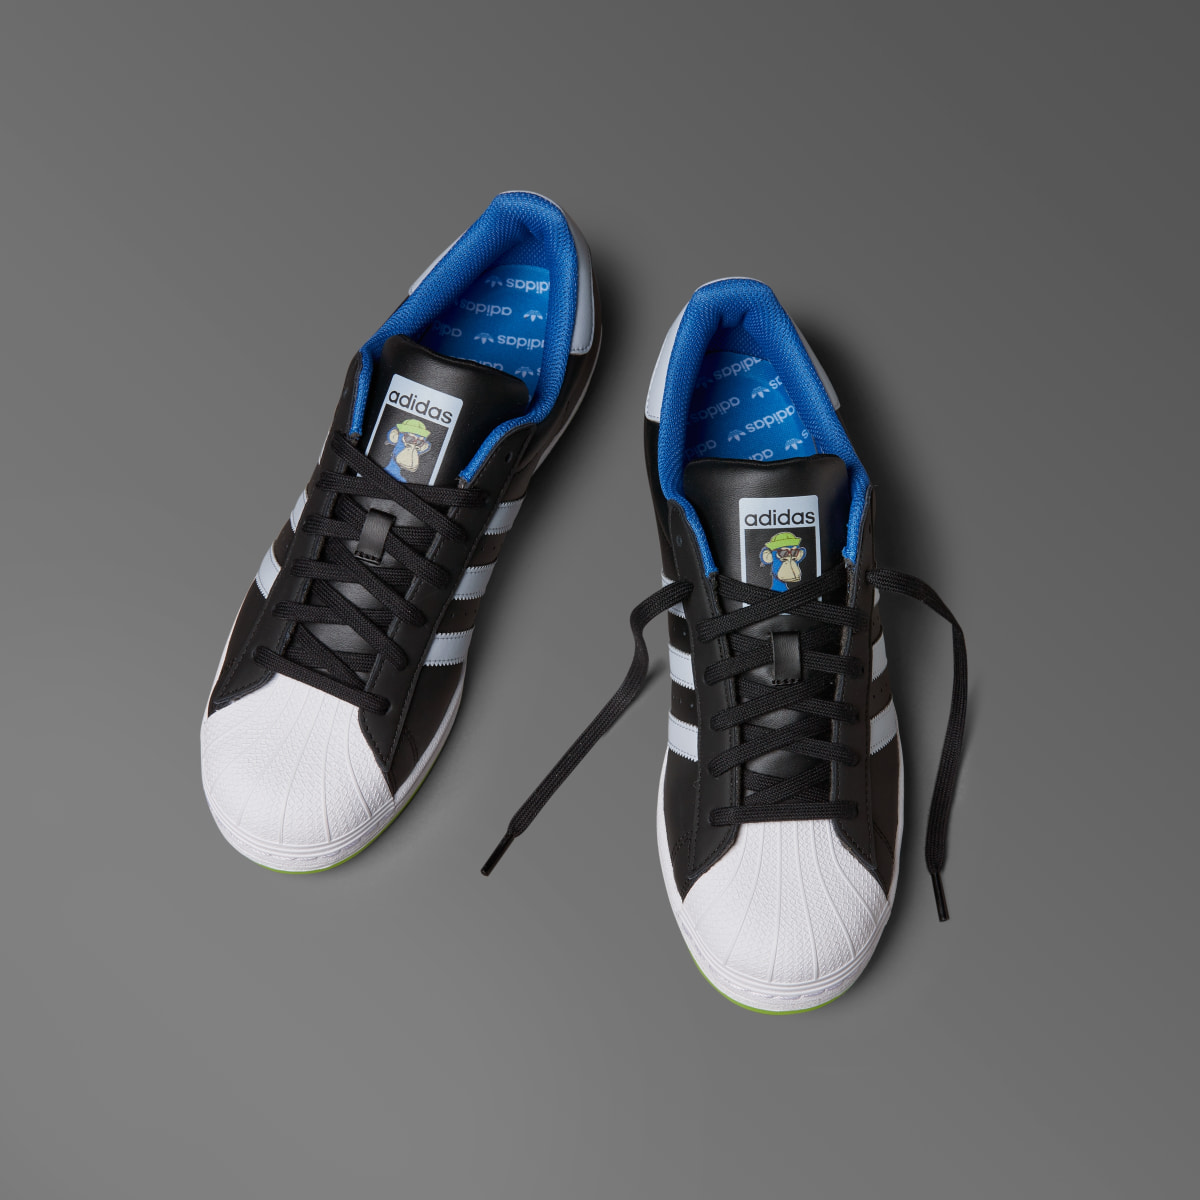 Adidas Superstar x Indigo Herz Shoes. 5